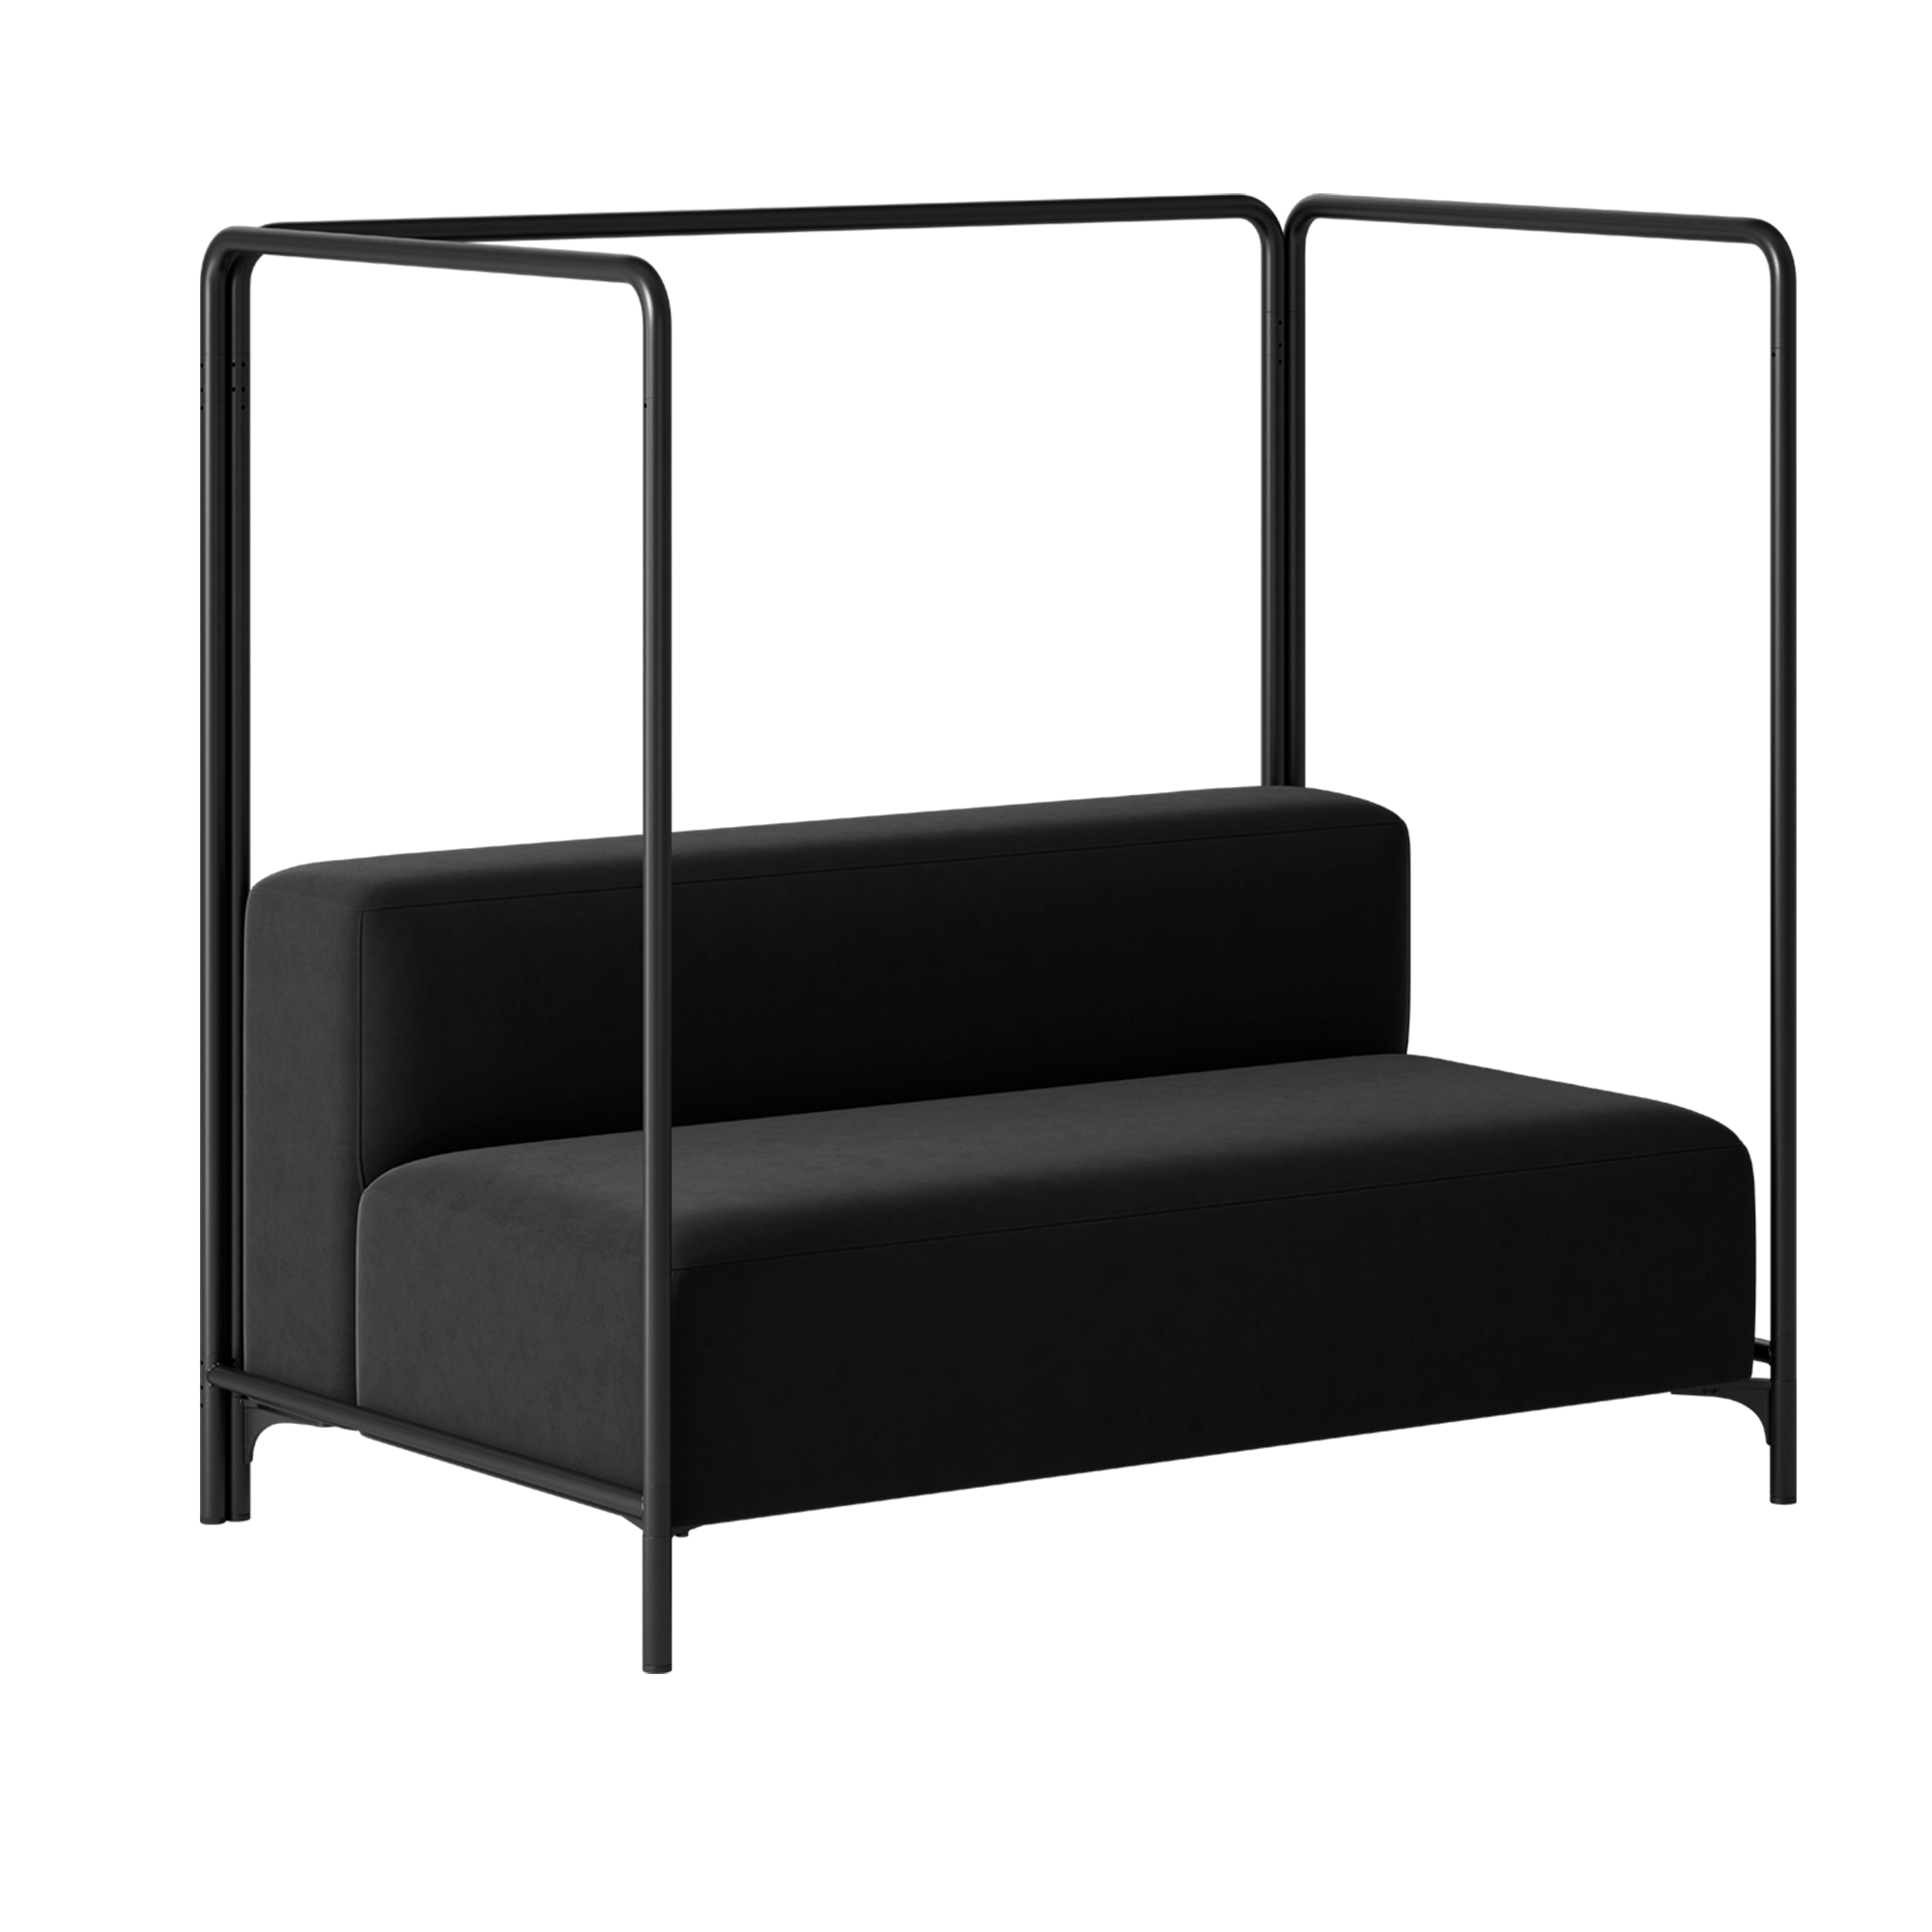 A black sofa with a black frame.